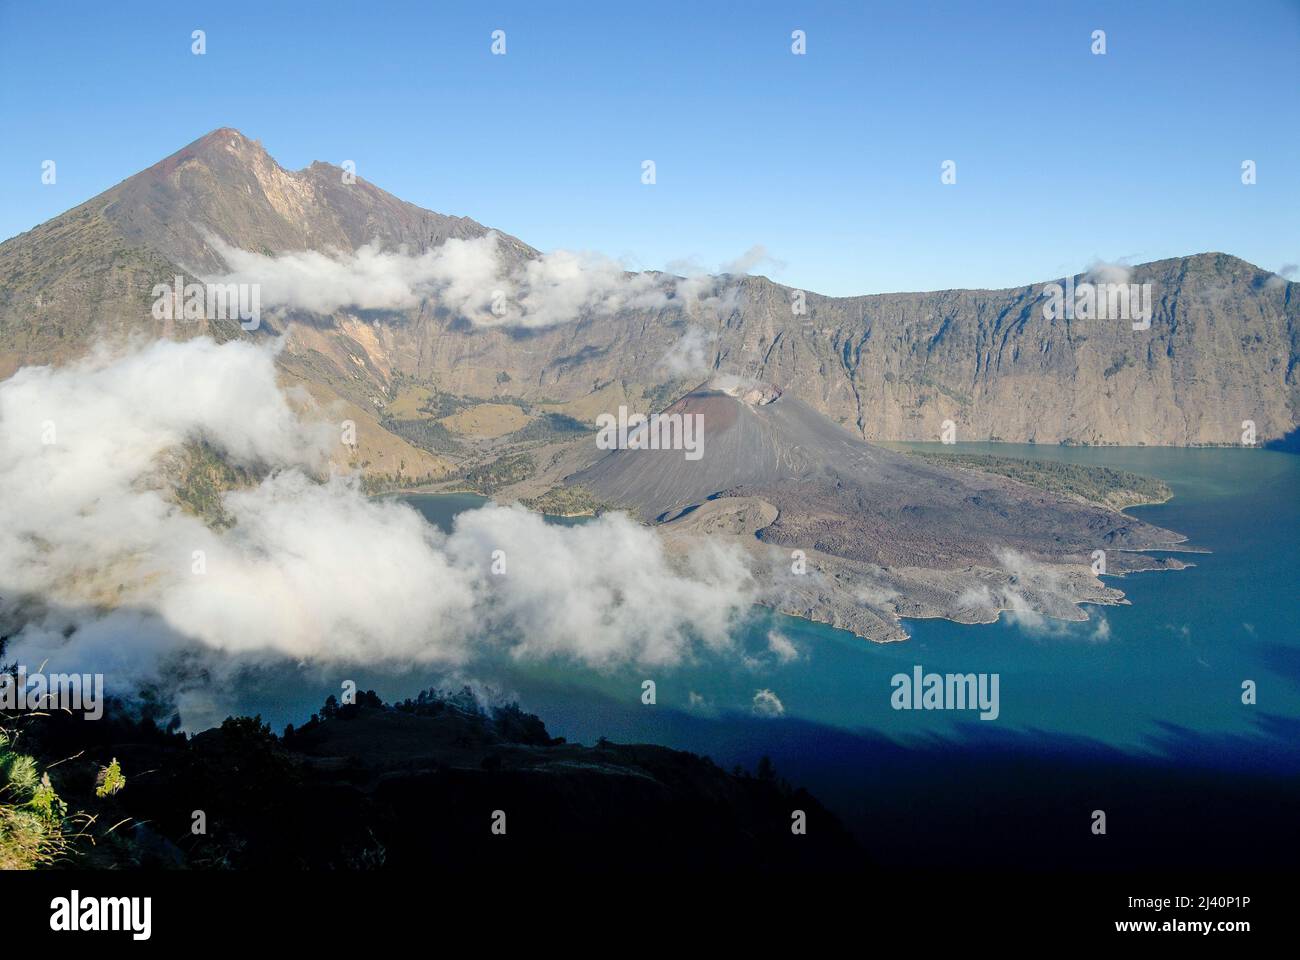 Vista de Gunung Rinjani y de Danau Segara Anak (Niño del Lago del Mar) dentro del cráter de Gunung Rinjani. También el cono de la escoria conocido como Gunung Baru. Foto de stock